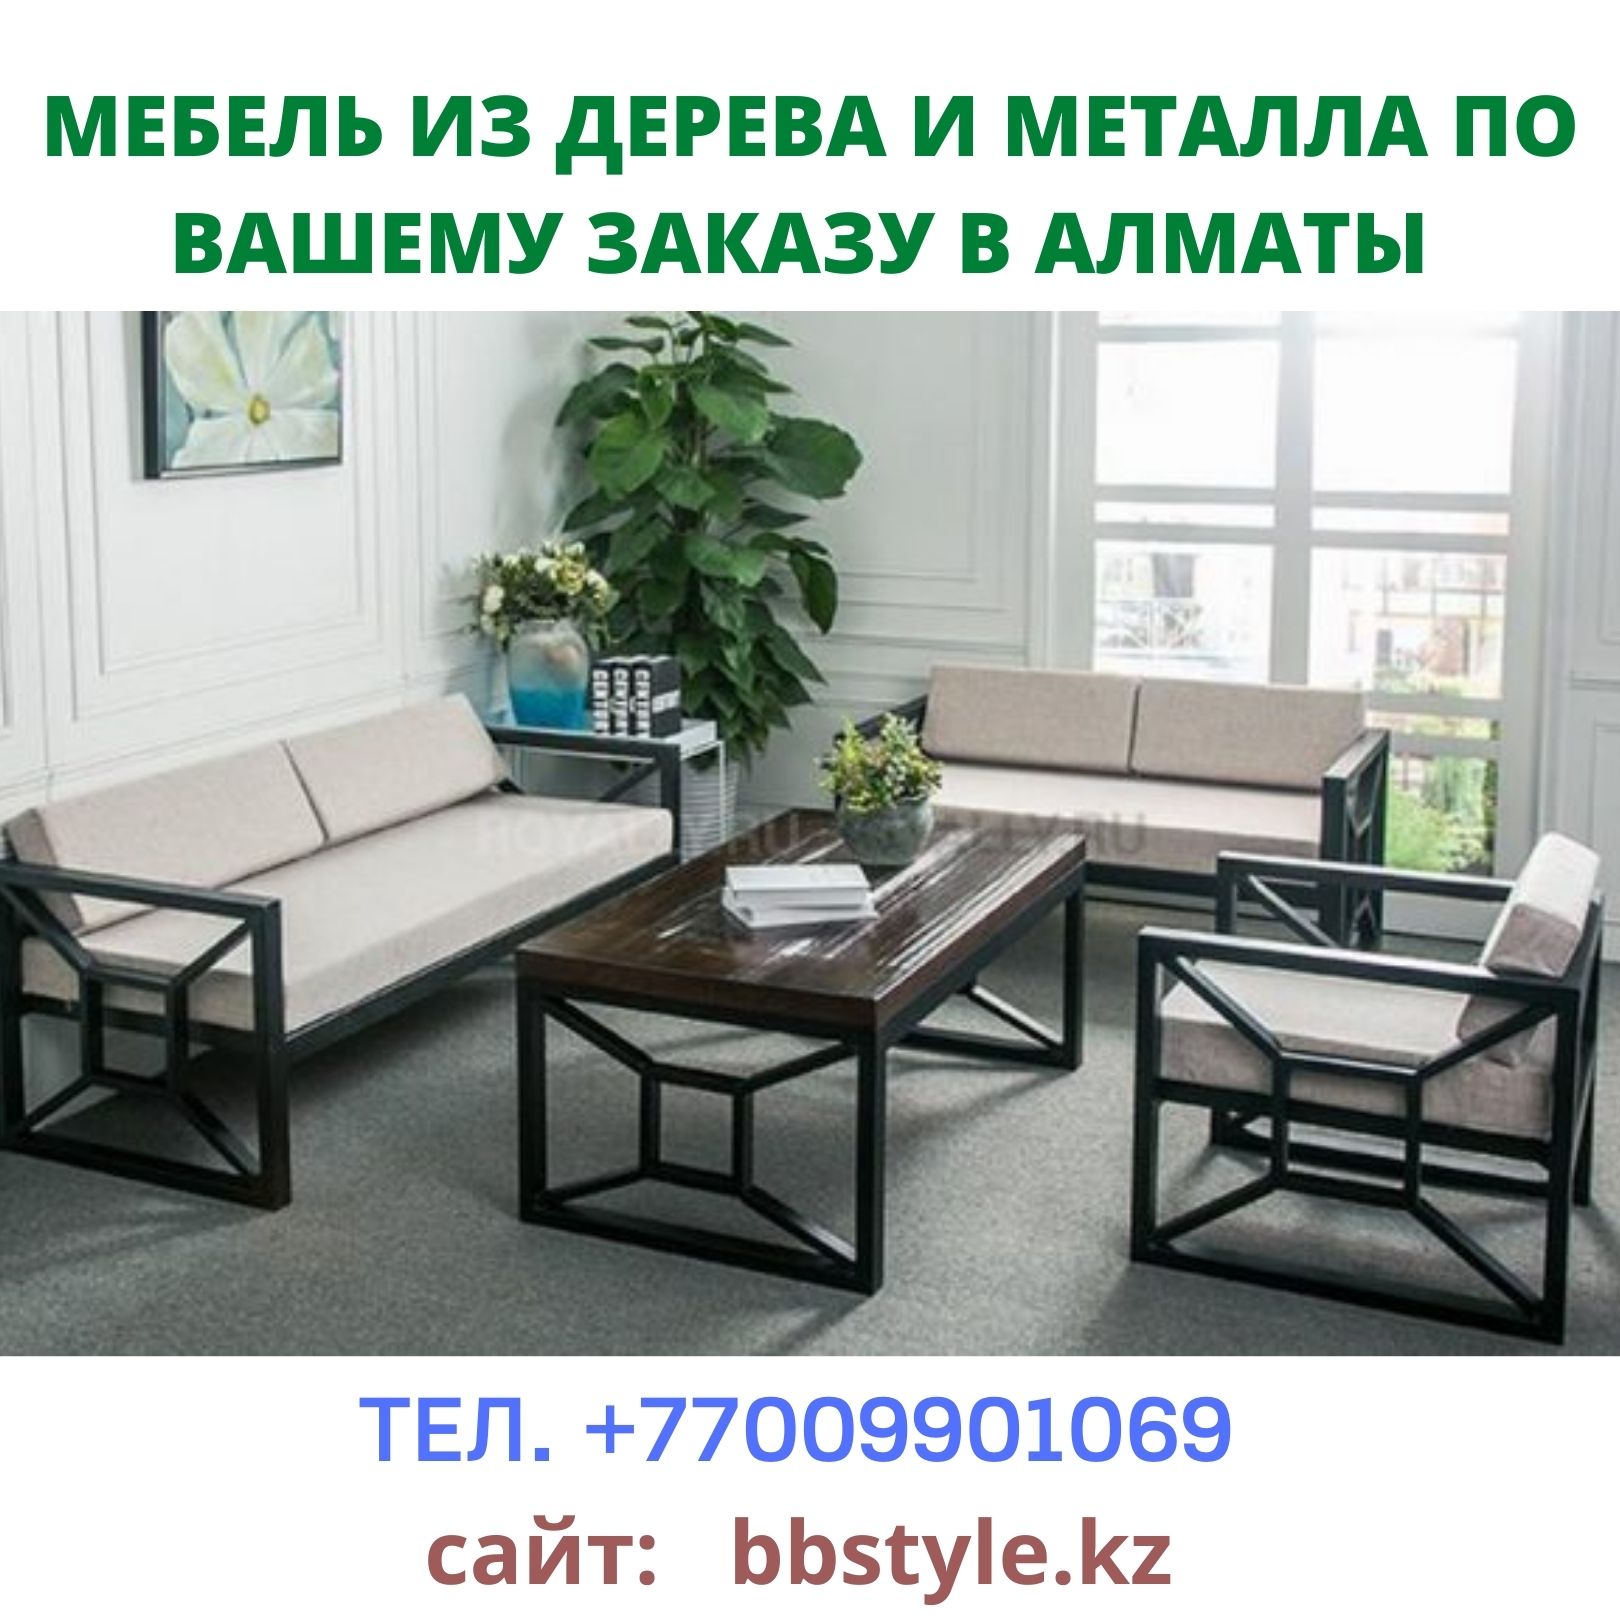 Изготовим мебель в Лофт-стиле (Loft) в Алматы, +77009901069 - фотография